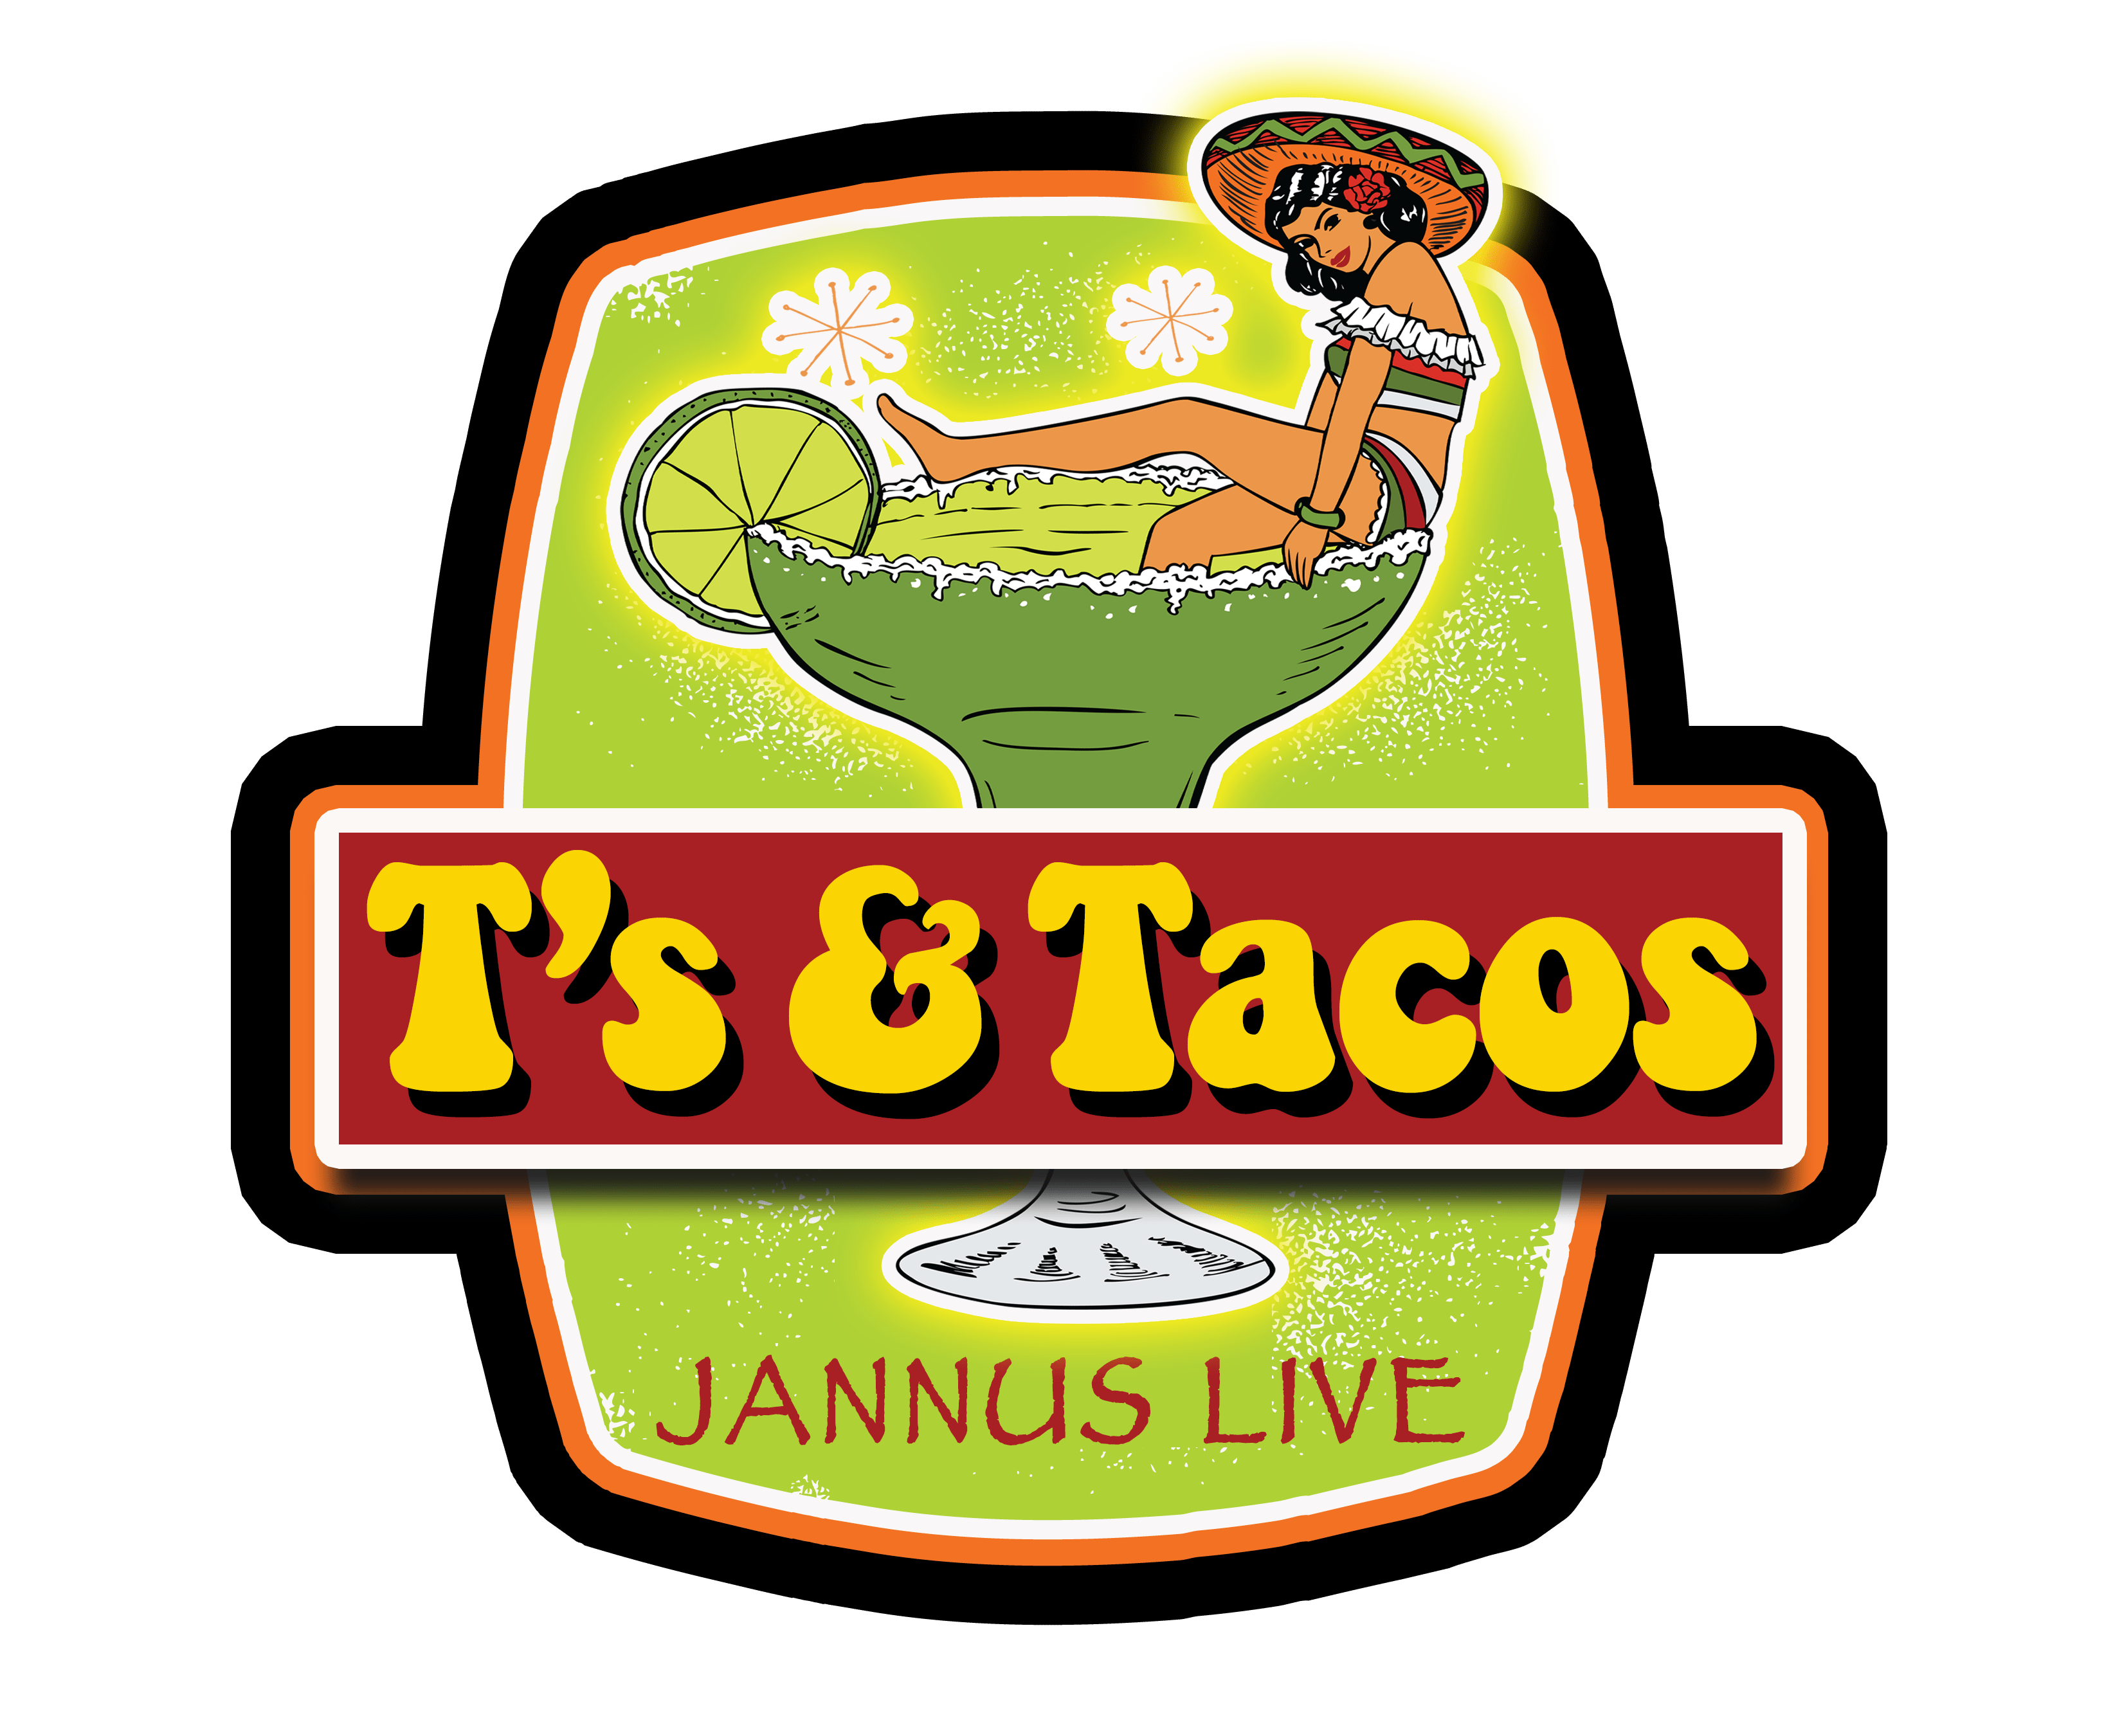 T's & Tacos